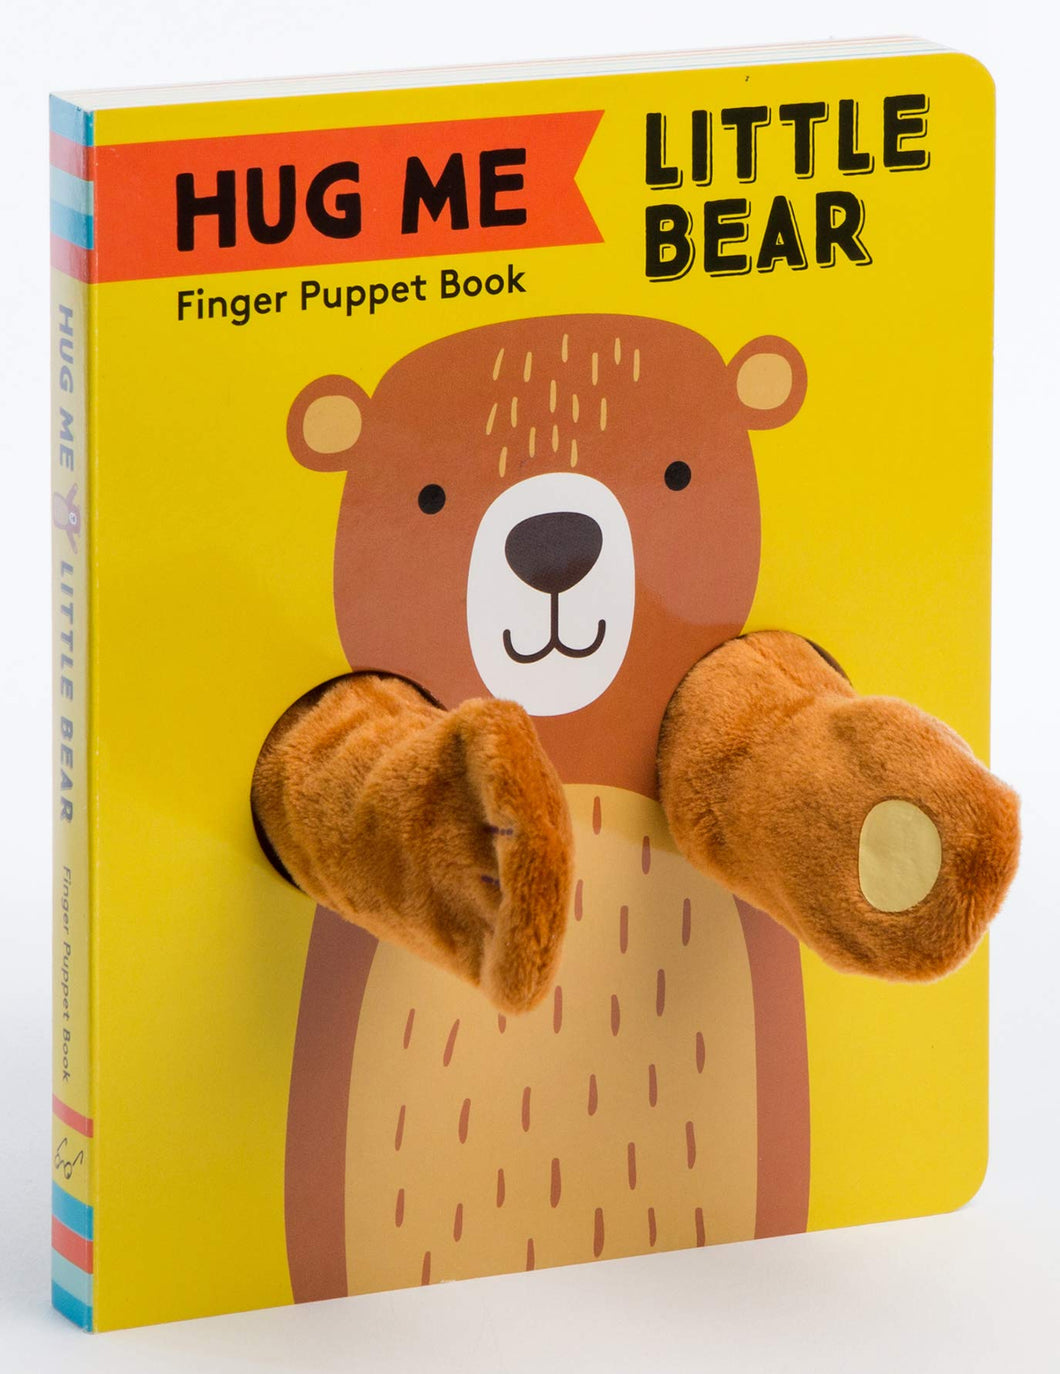 Hug me little bear - Indie Indie Bang! Bang!